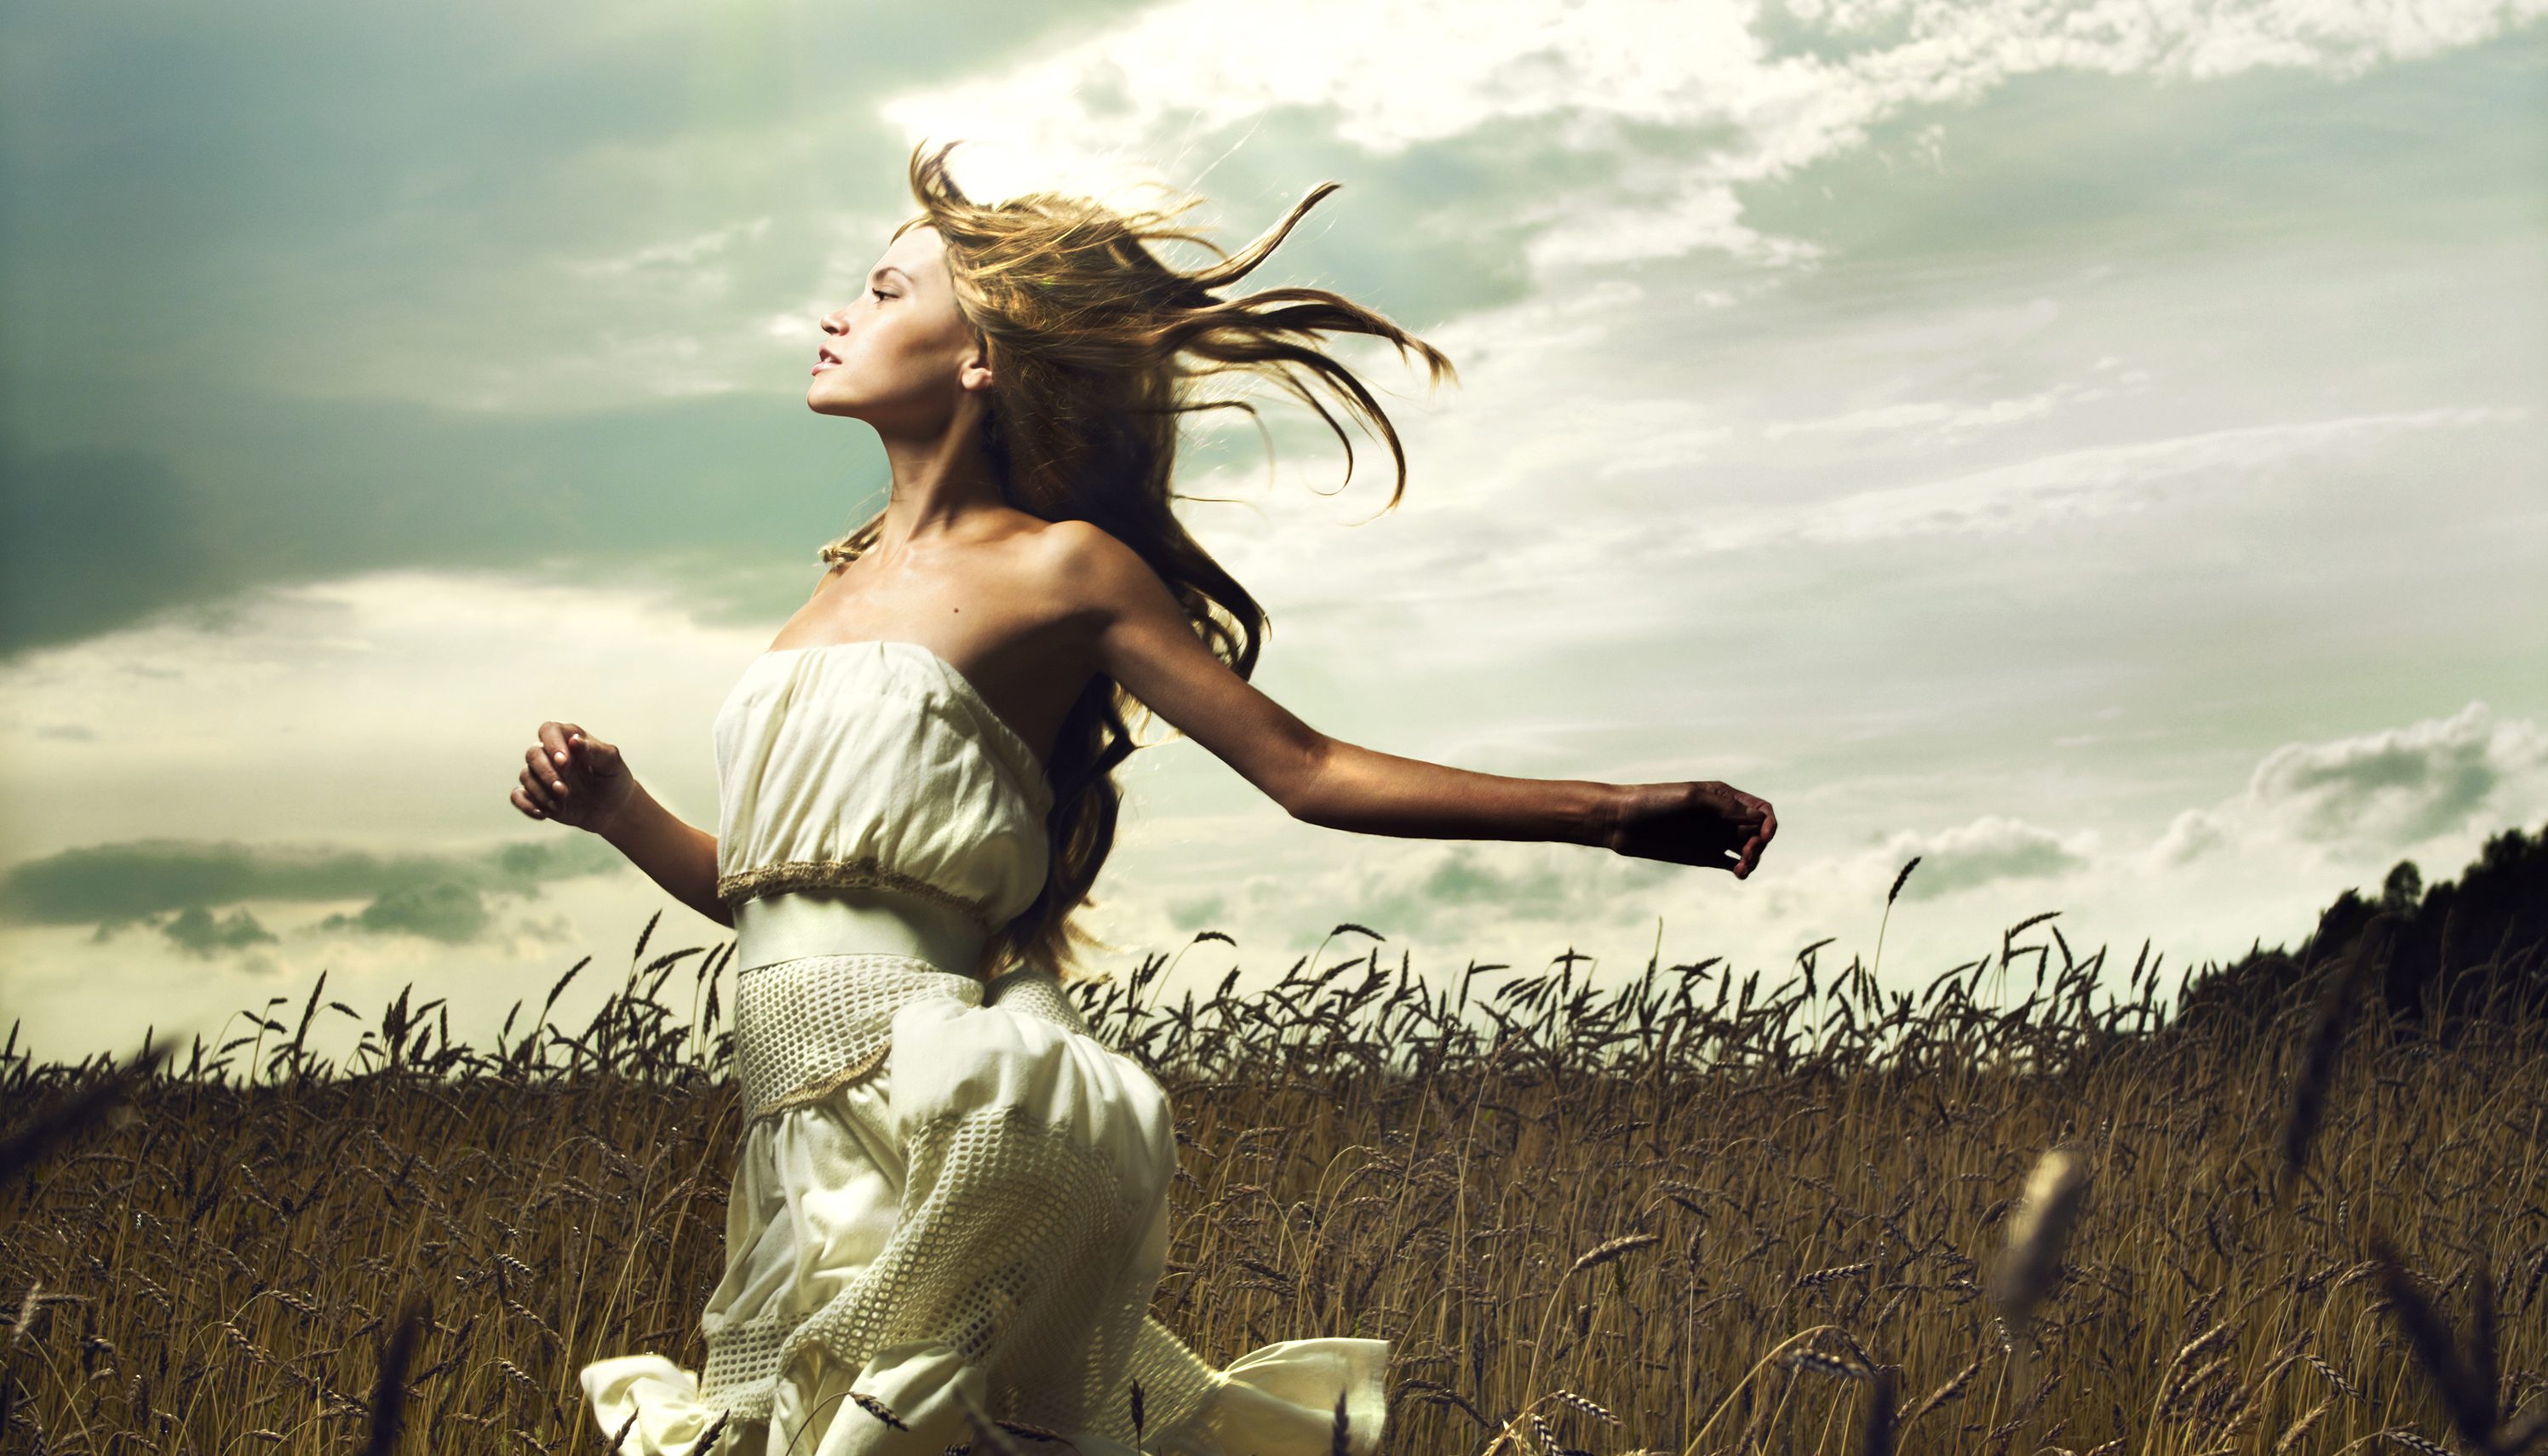 На ближайшем ветру. Девушка убегает. Девушка бежит в поле. Девушка в платье убегает. Девушка бежит в платье.